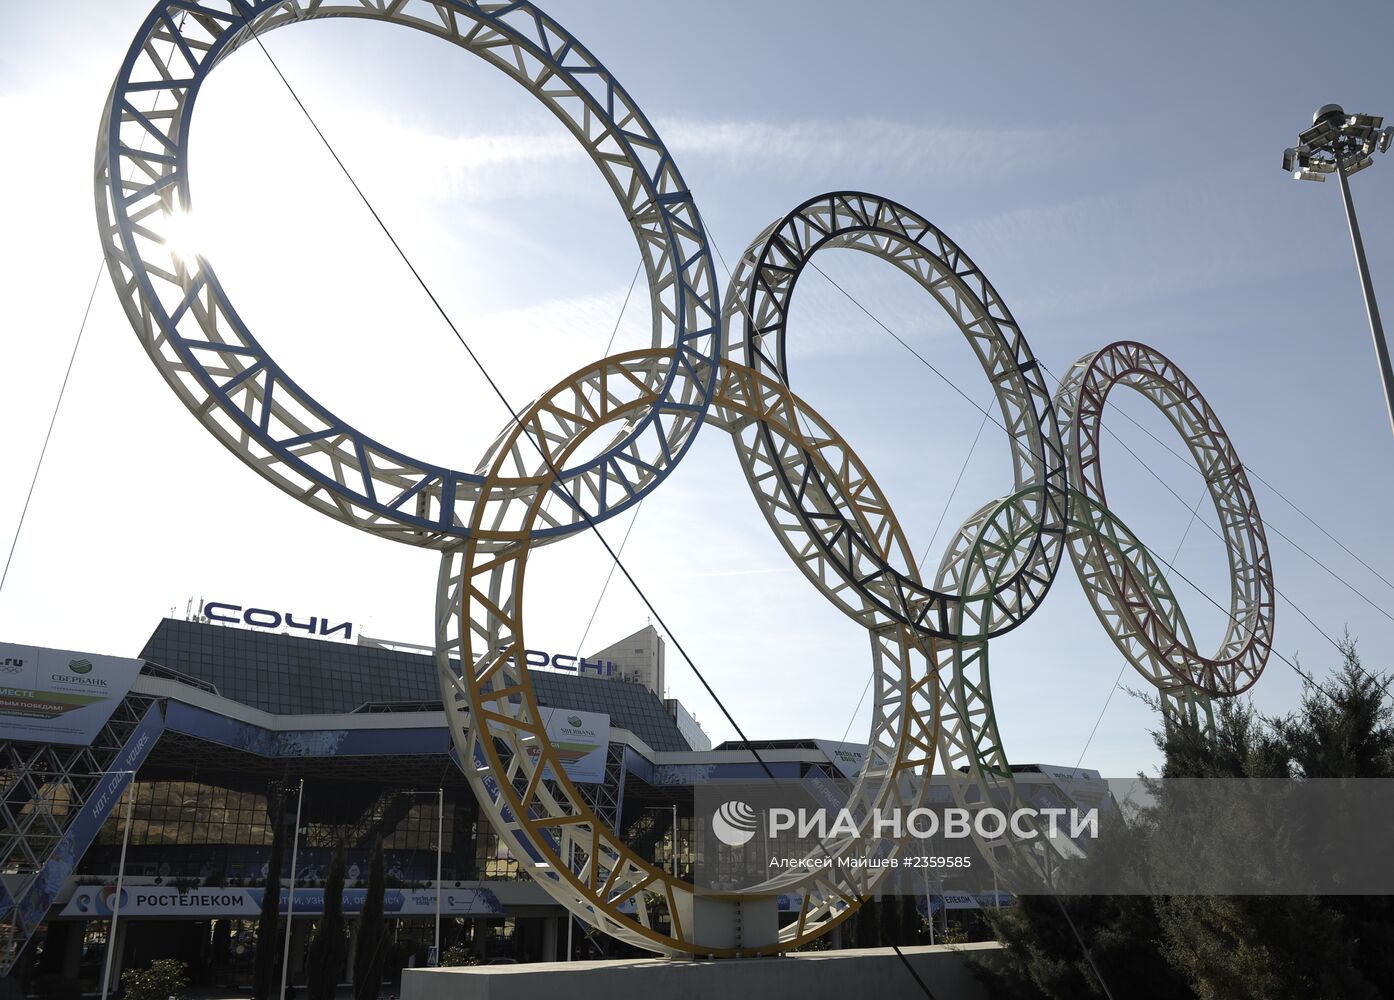 Сочи перед открытием ХХII зимних Олимпийских игр